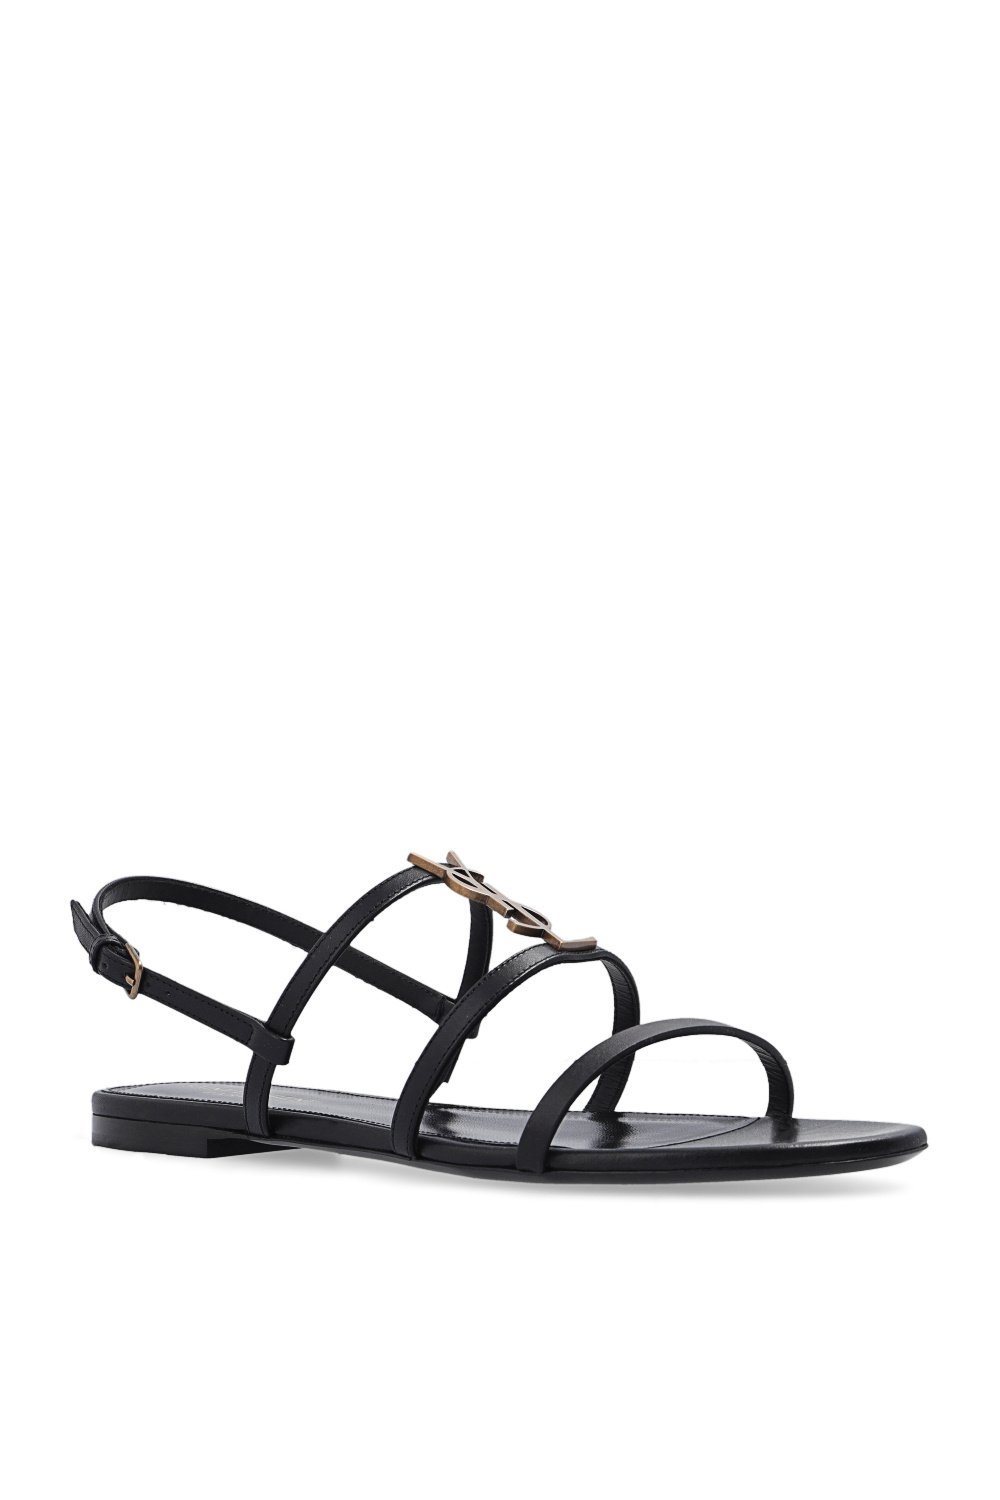 Saint Laurent ‘Cassandra’ leather sandals